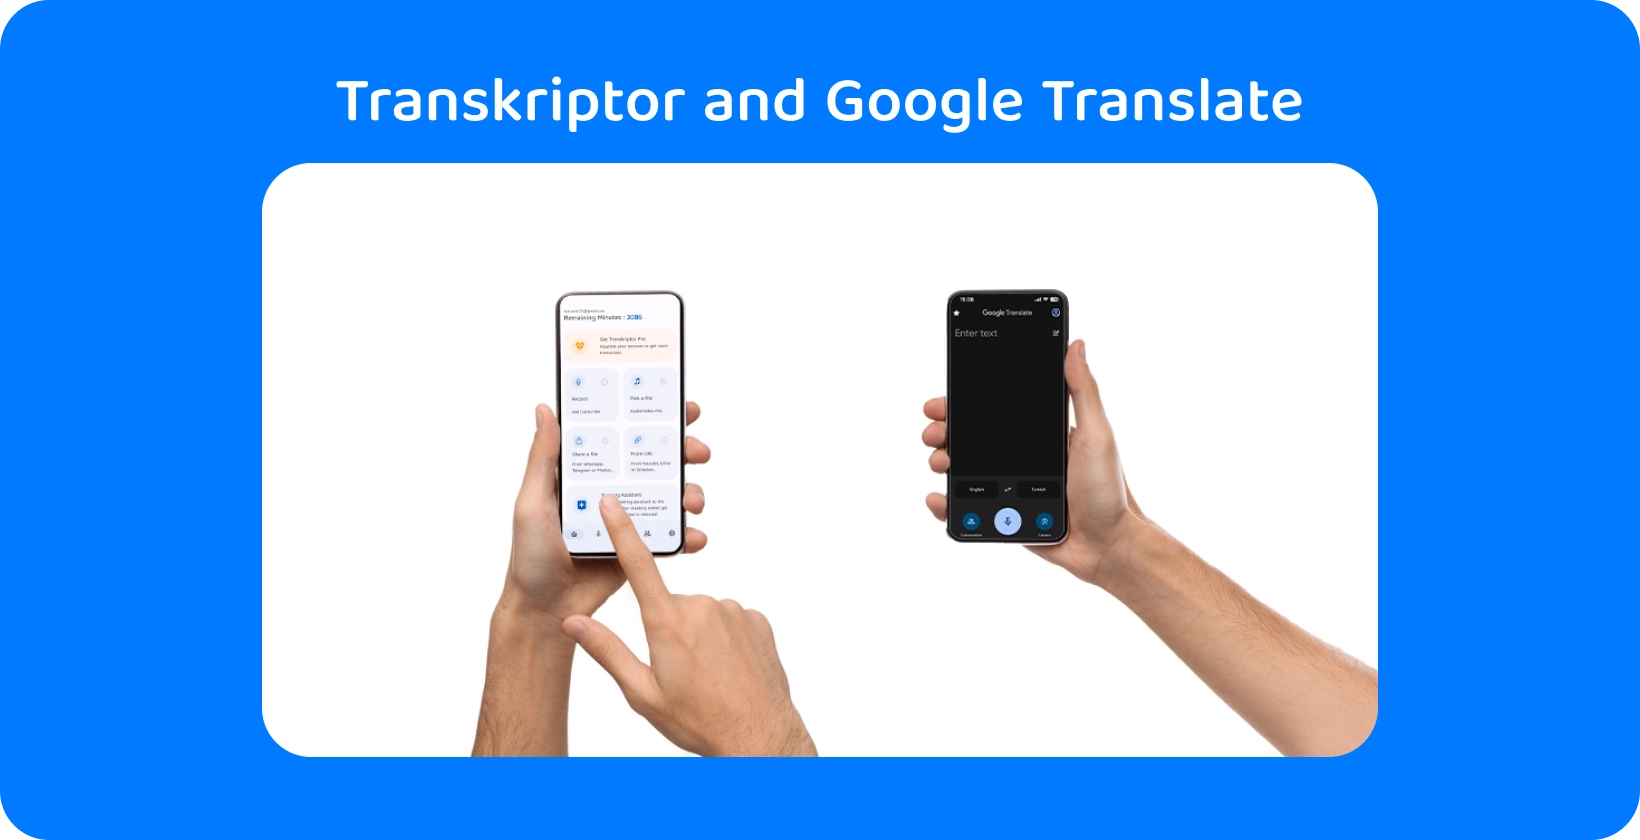 Δύο χέρια που κρατούν smartphones με Transkriptor και Google Translate, επιδεικνύοντας τη μεταγραφή ήχου και τη μετάφραση.